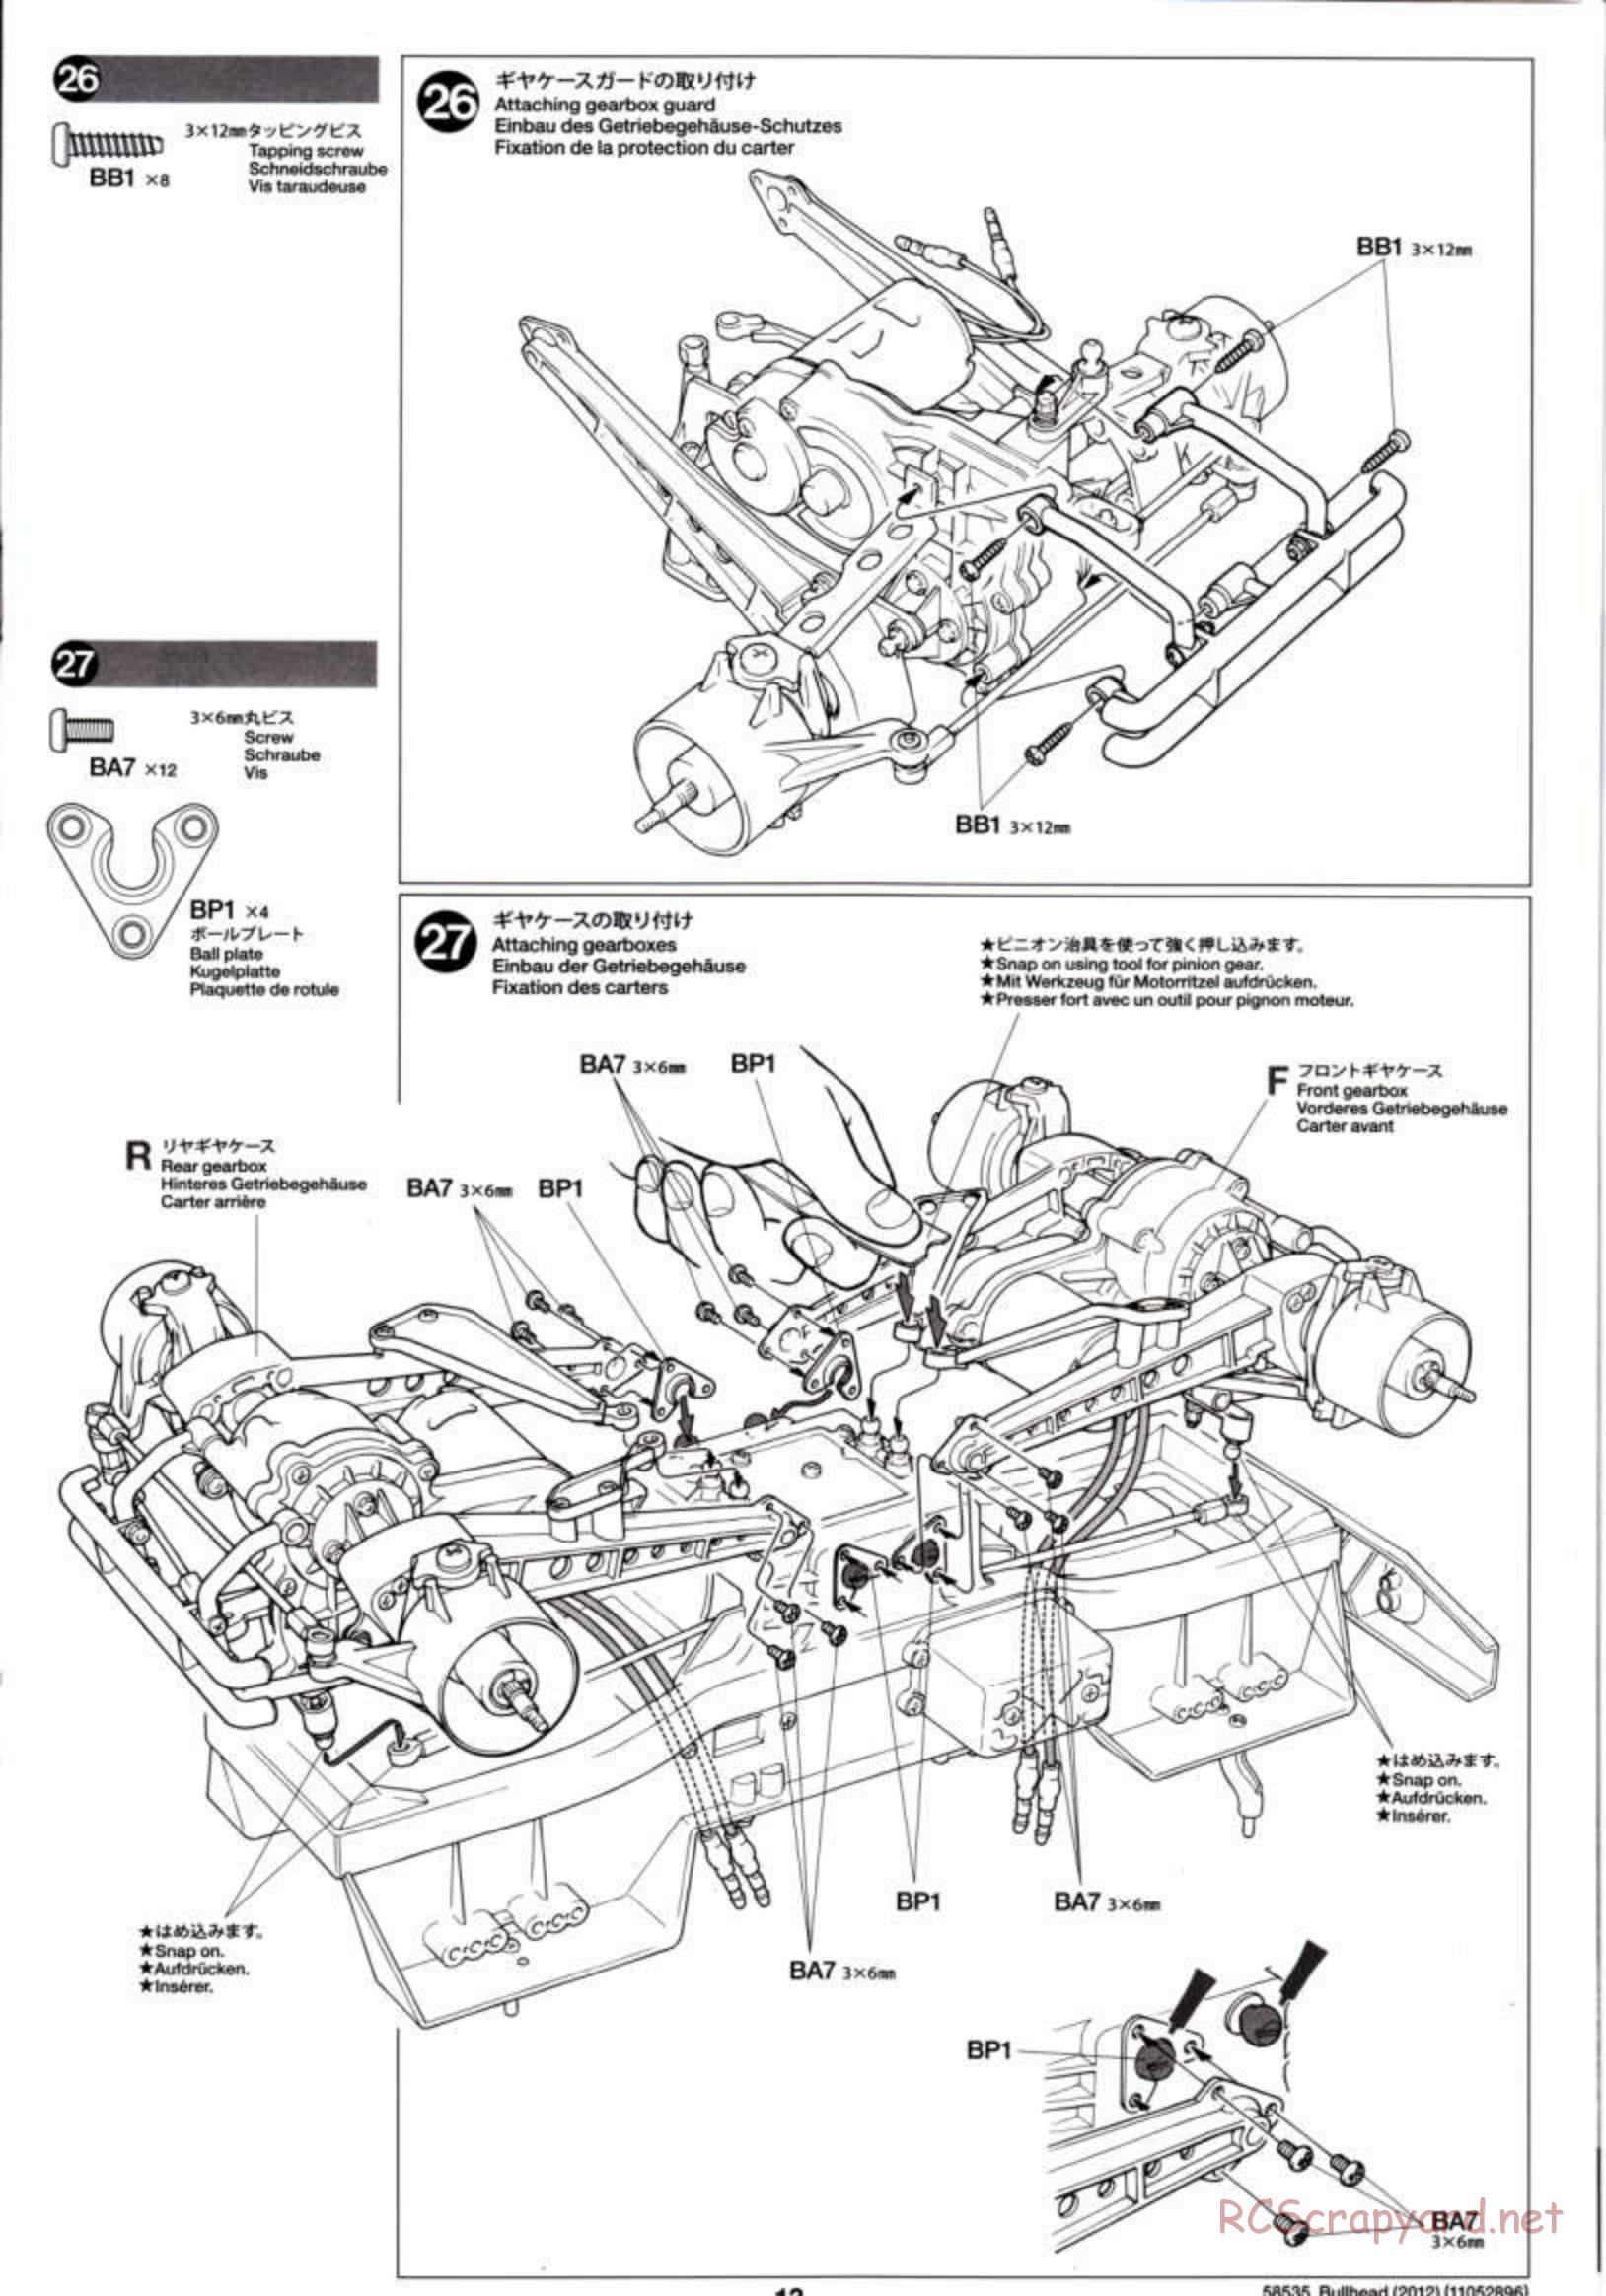 Tamiya - Bullhead 2012 - CB Chassis - Manual - Page 13